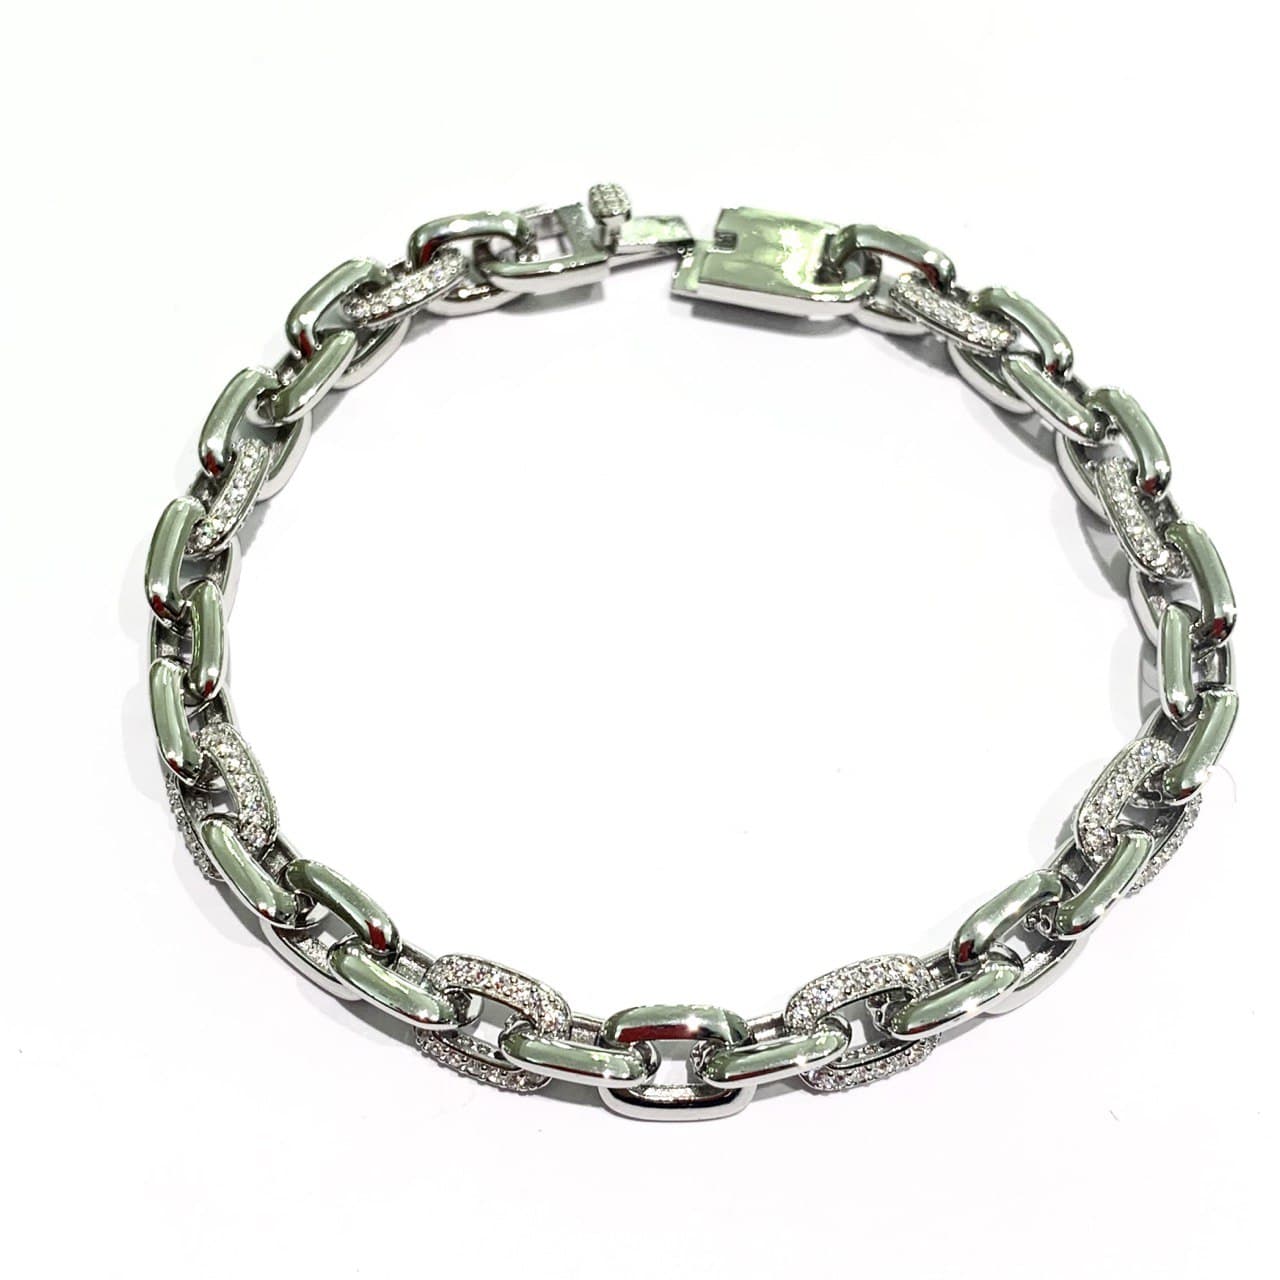 Bracciale in argento con maglia a catena di cui alcuni anelli ricoperti da zirconi.  Lunghezza 19 cm.  Larghezza maglia 0,5 cm.